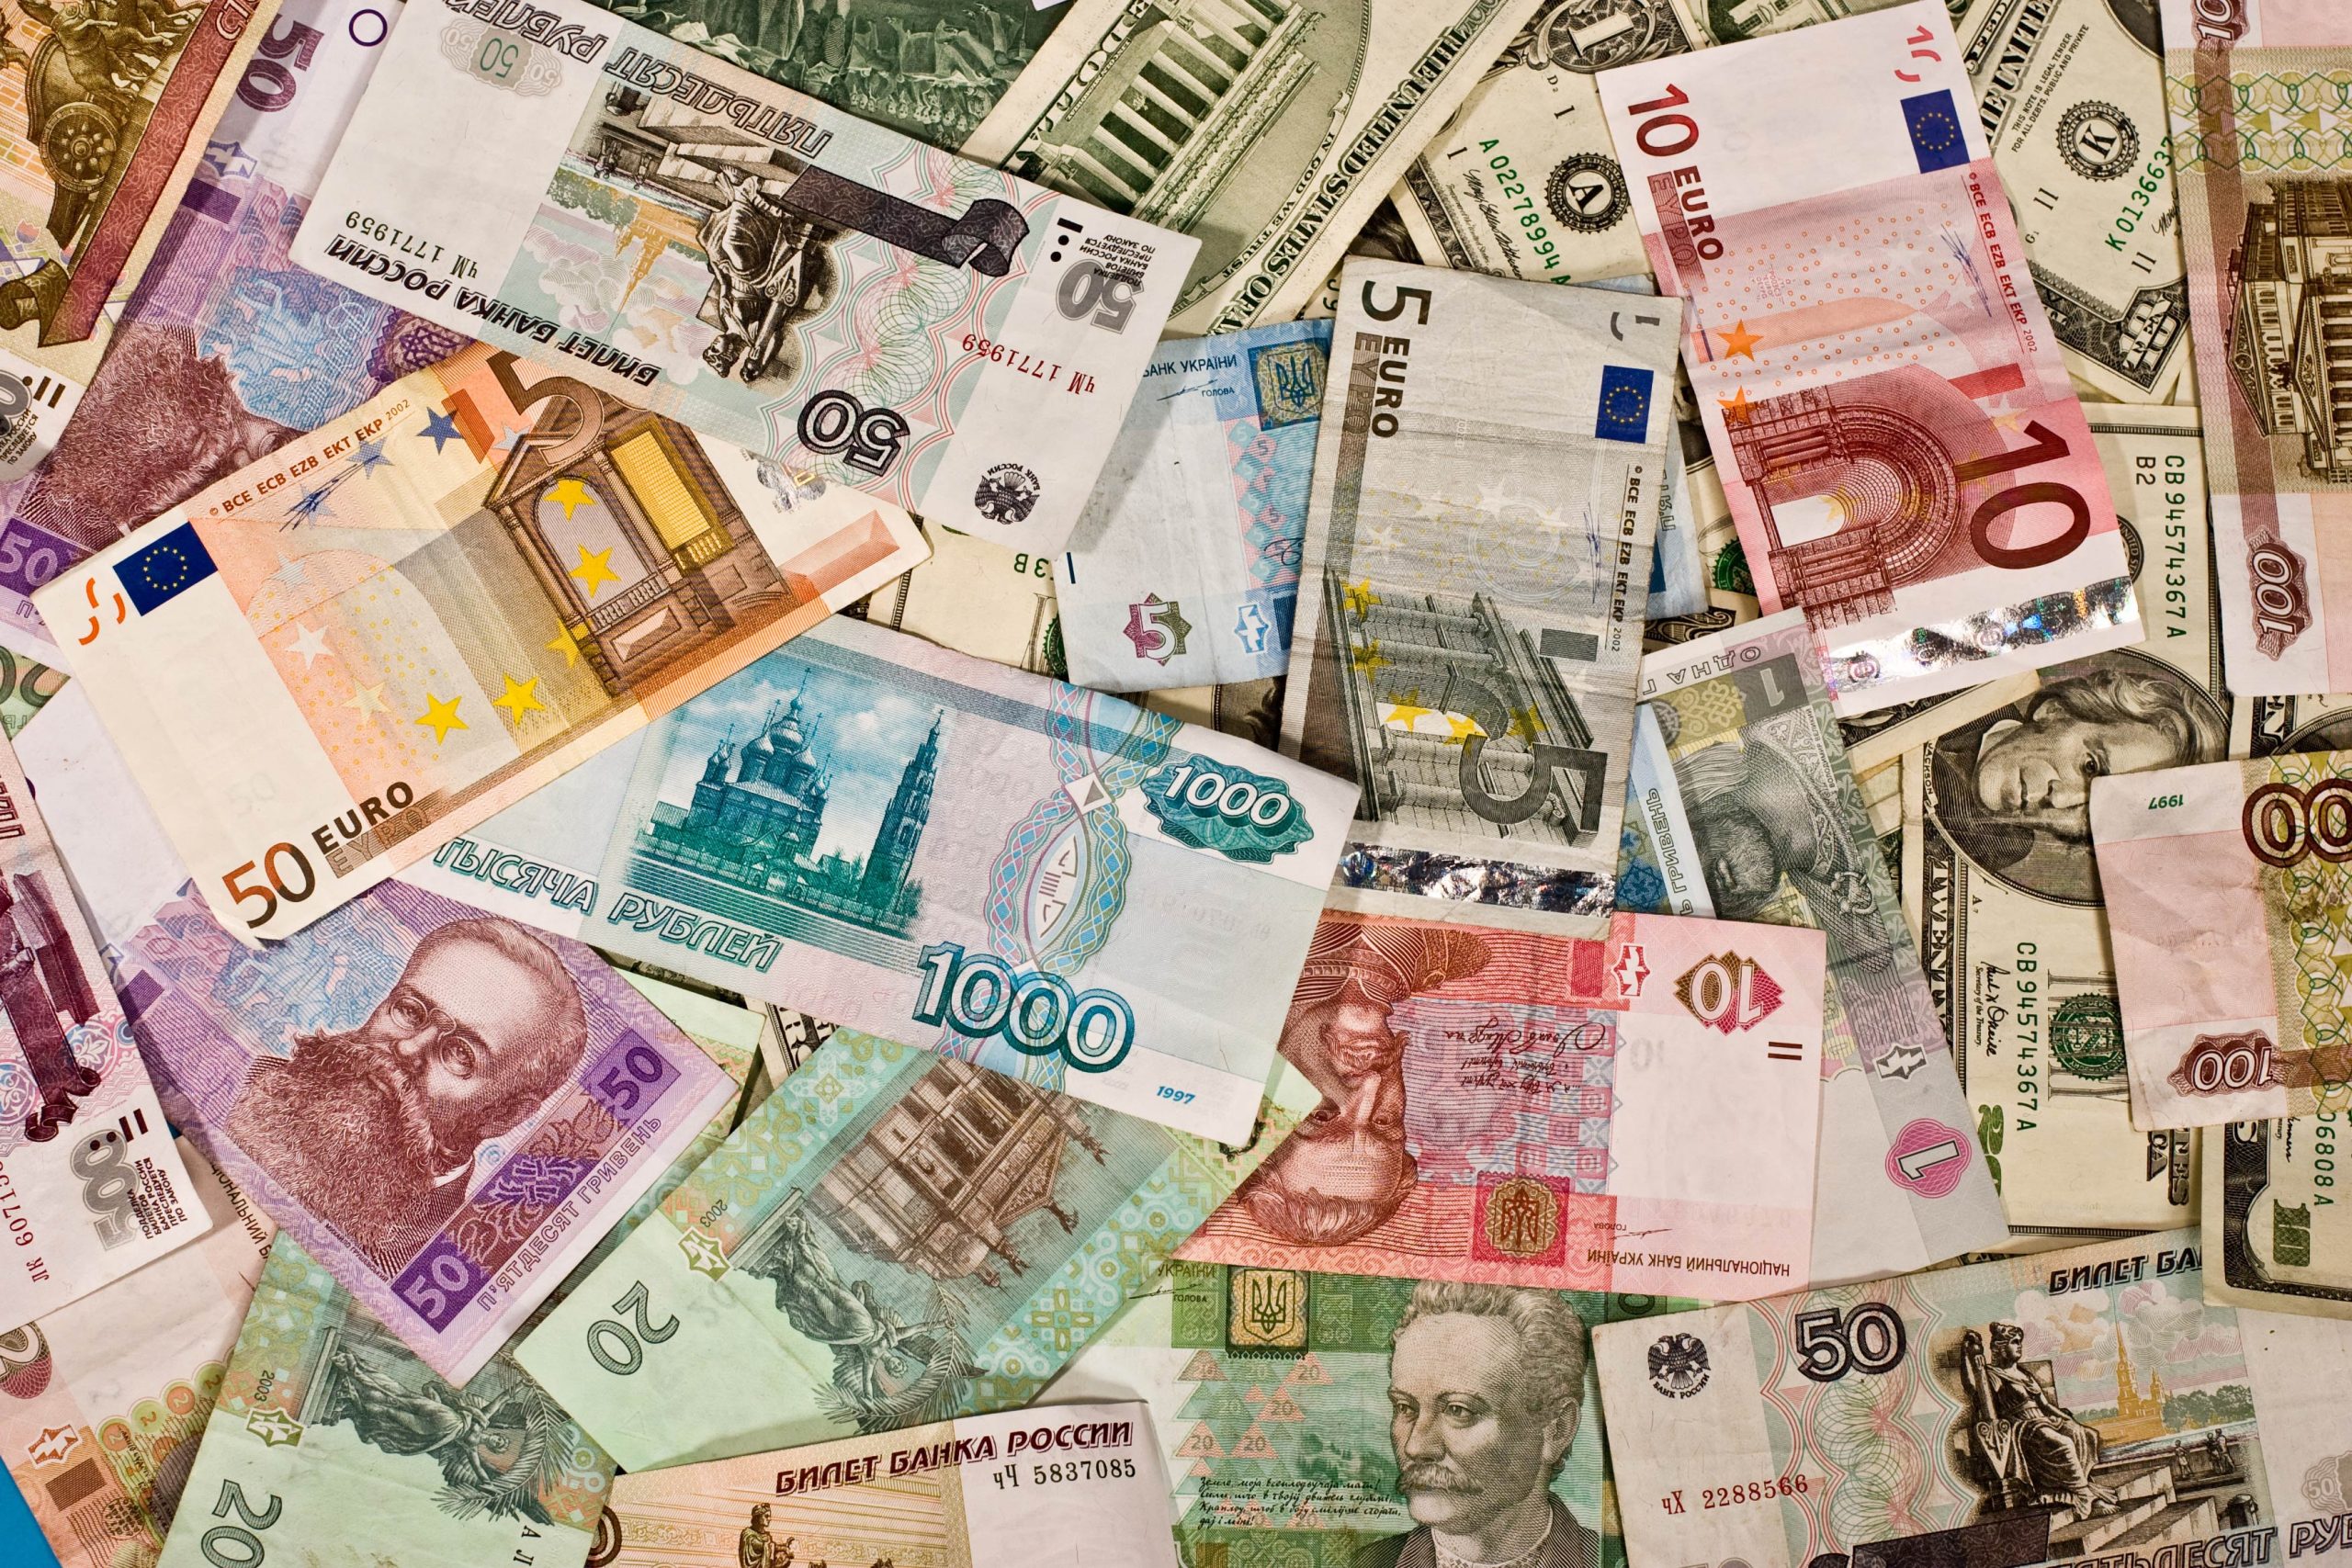 بعض العملات الدولية و الرموز الخاصة بها